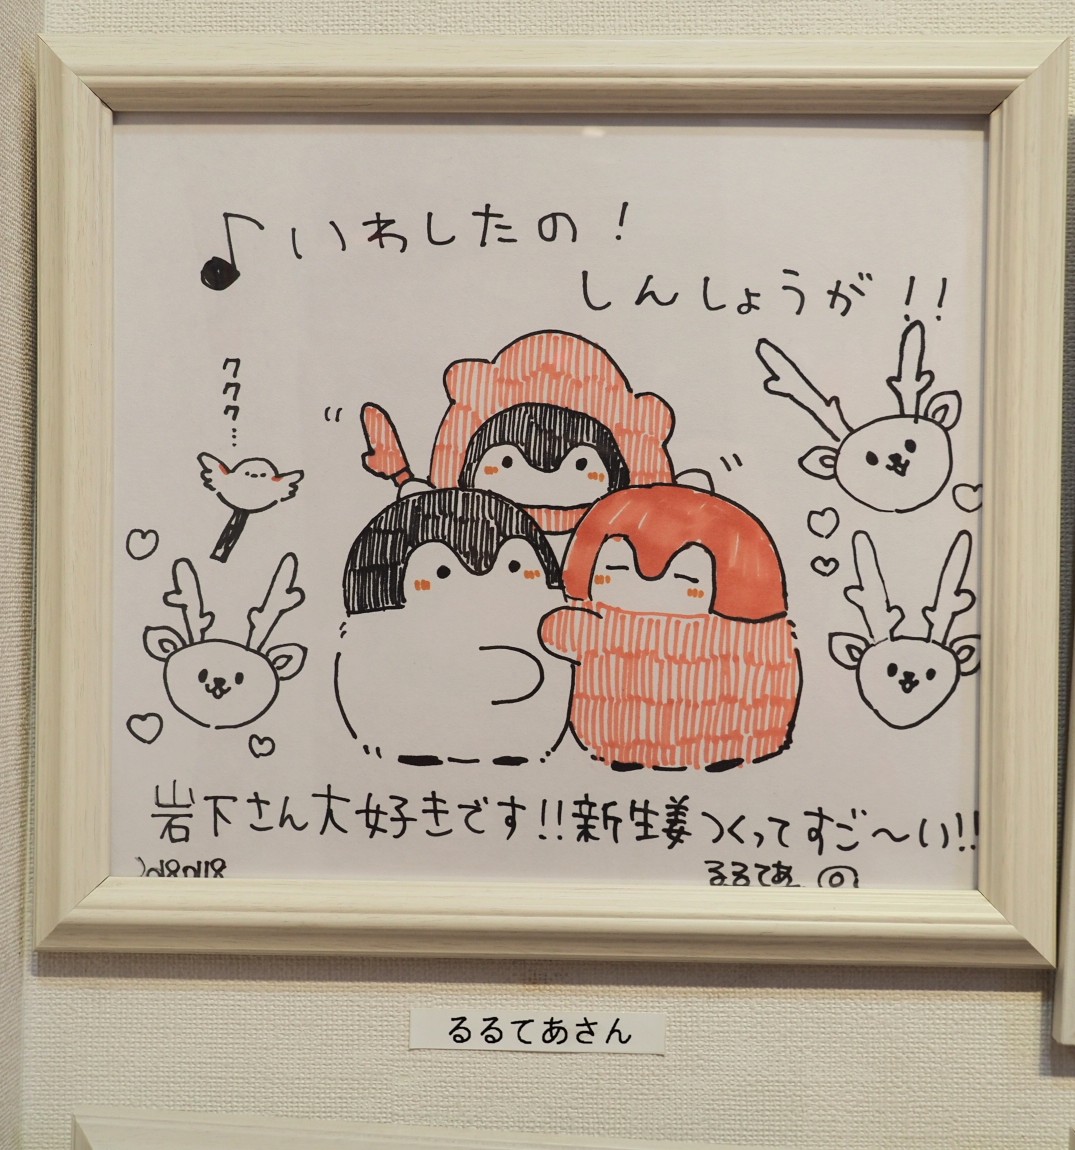 栃木県にある
『岩下の新生姜ミュージアム』
へ行ってきました🎵
色々な漫画家さんの色紙を見ているだけでも楽しめました

入館無料なので、機会があればぜひ